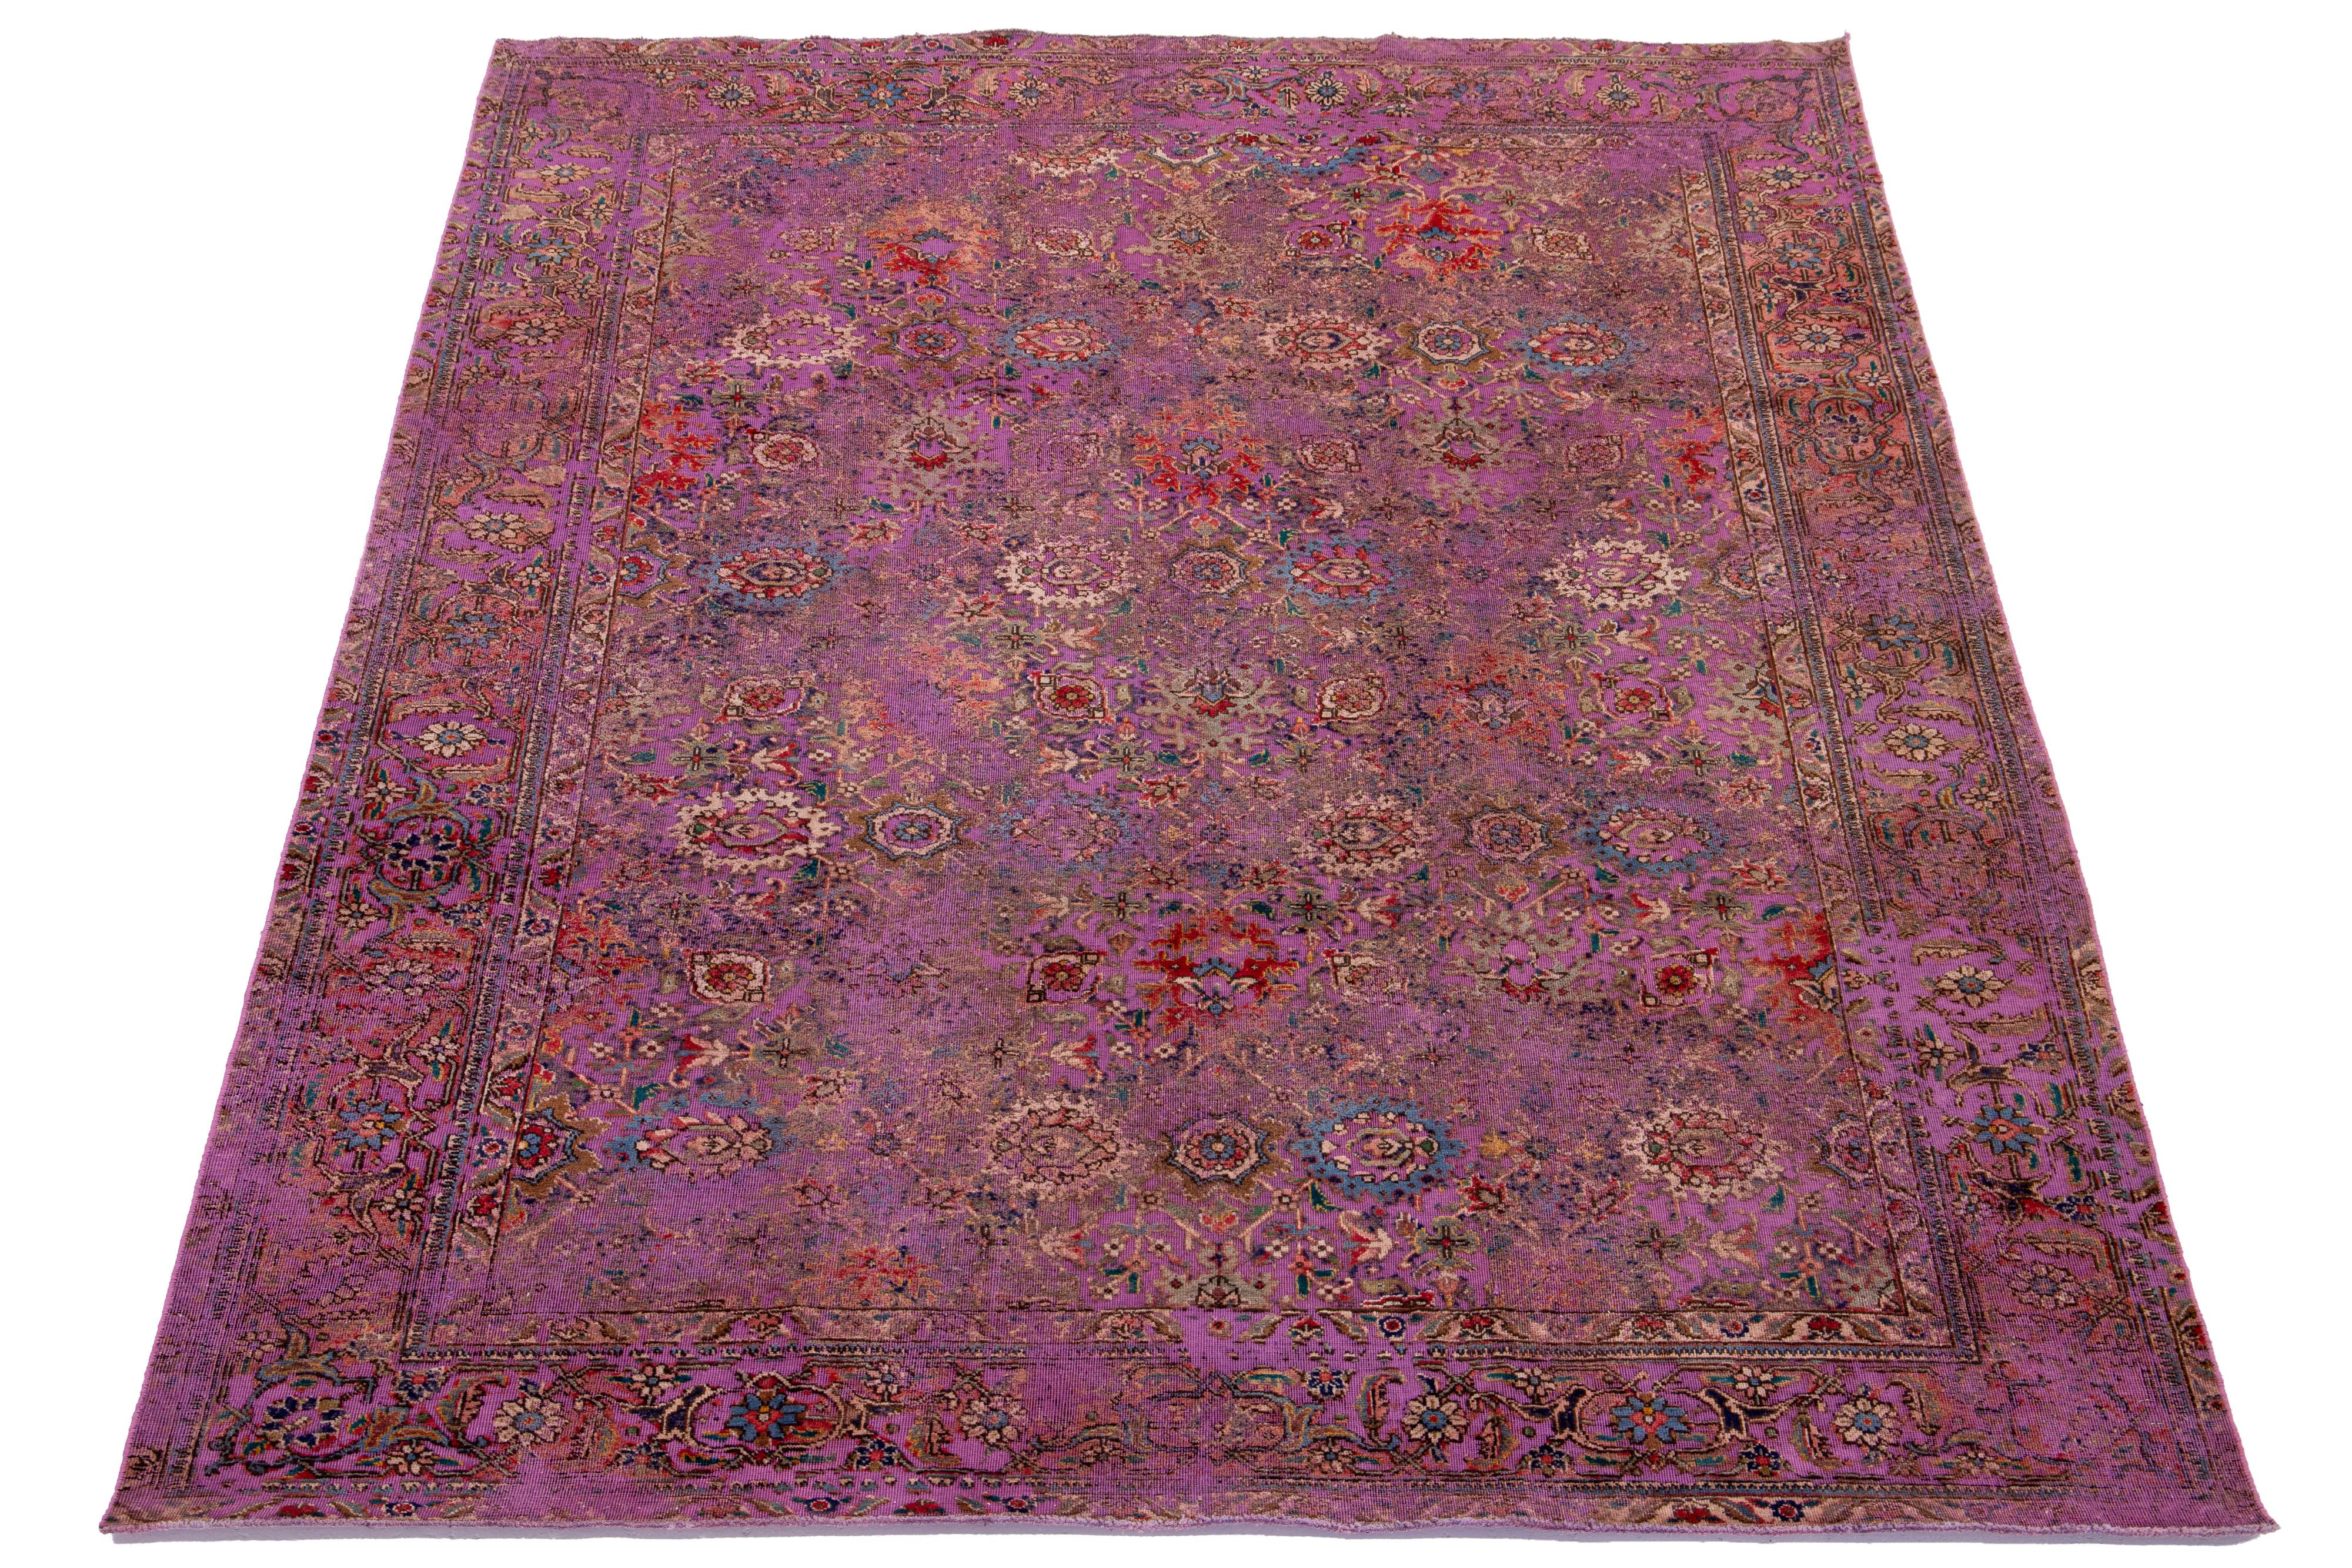 Ce tapis persan antique en laine violette présente un magnifique motif floral aux accents multicolores éclatants.

Ce tapis mesure 7'4'' x 10'5